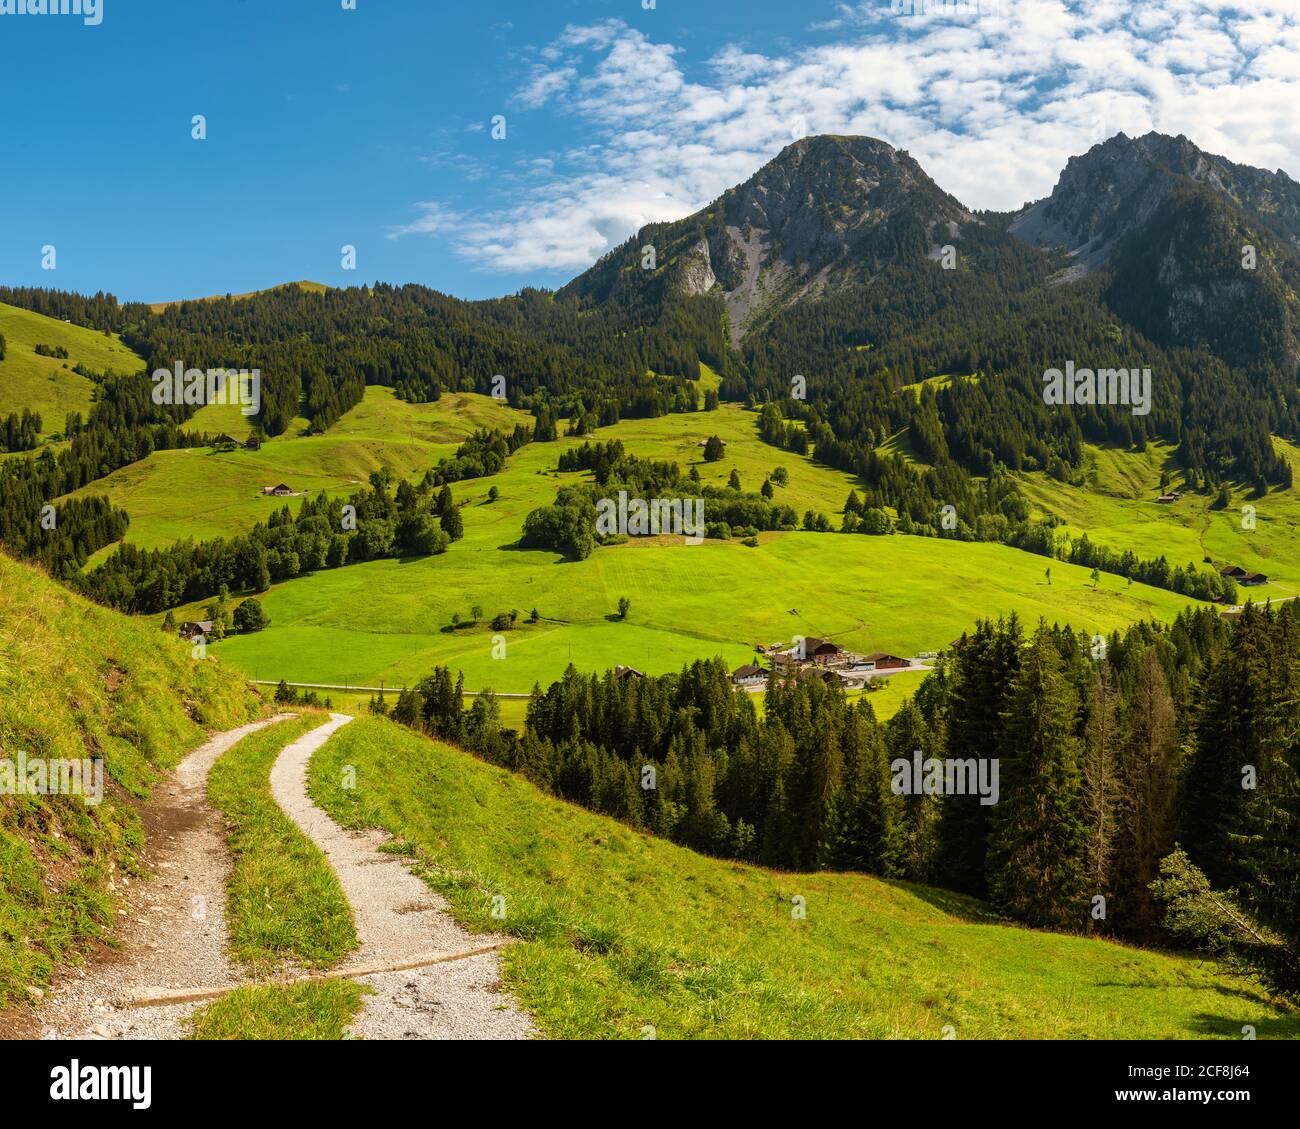 La catena montuosa del Gruyere e un sentiero escursionistico, la Svizzera Foto Stock